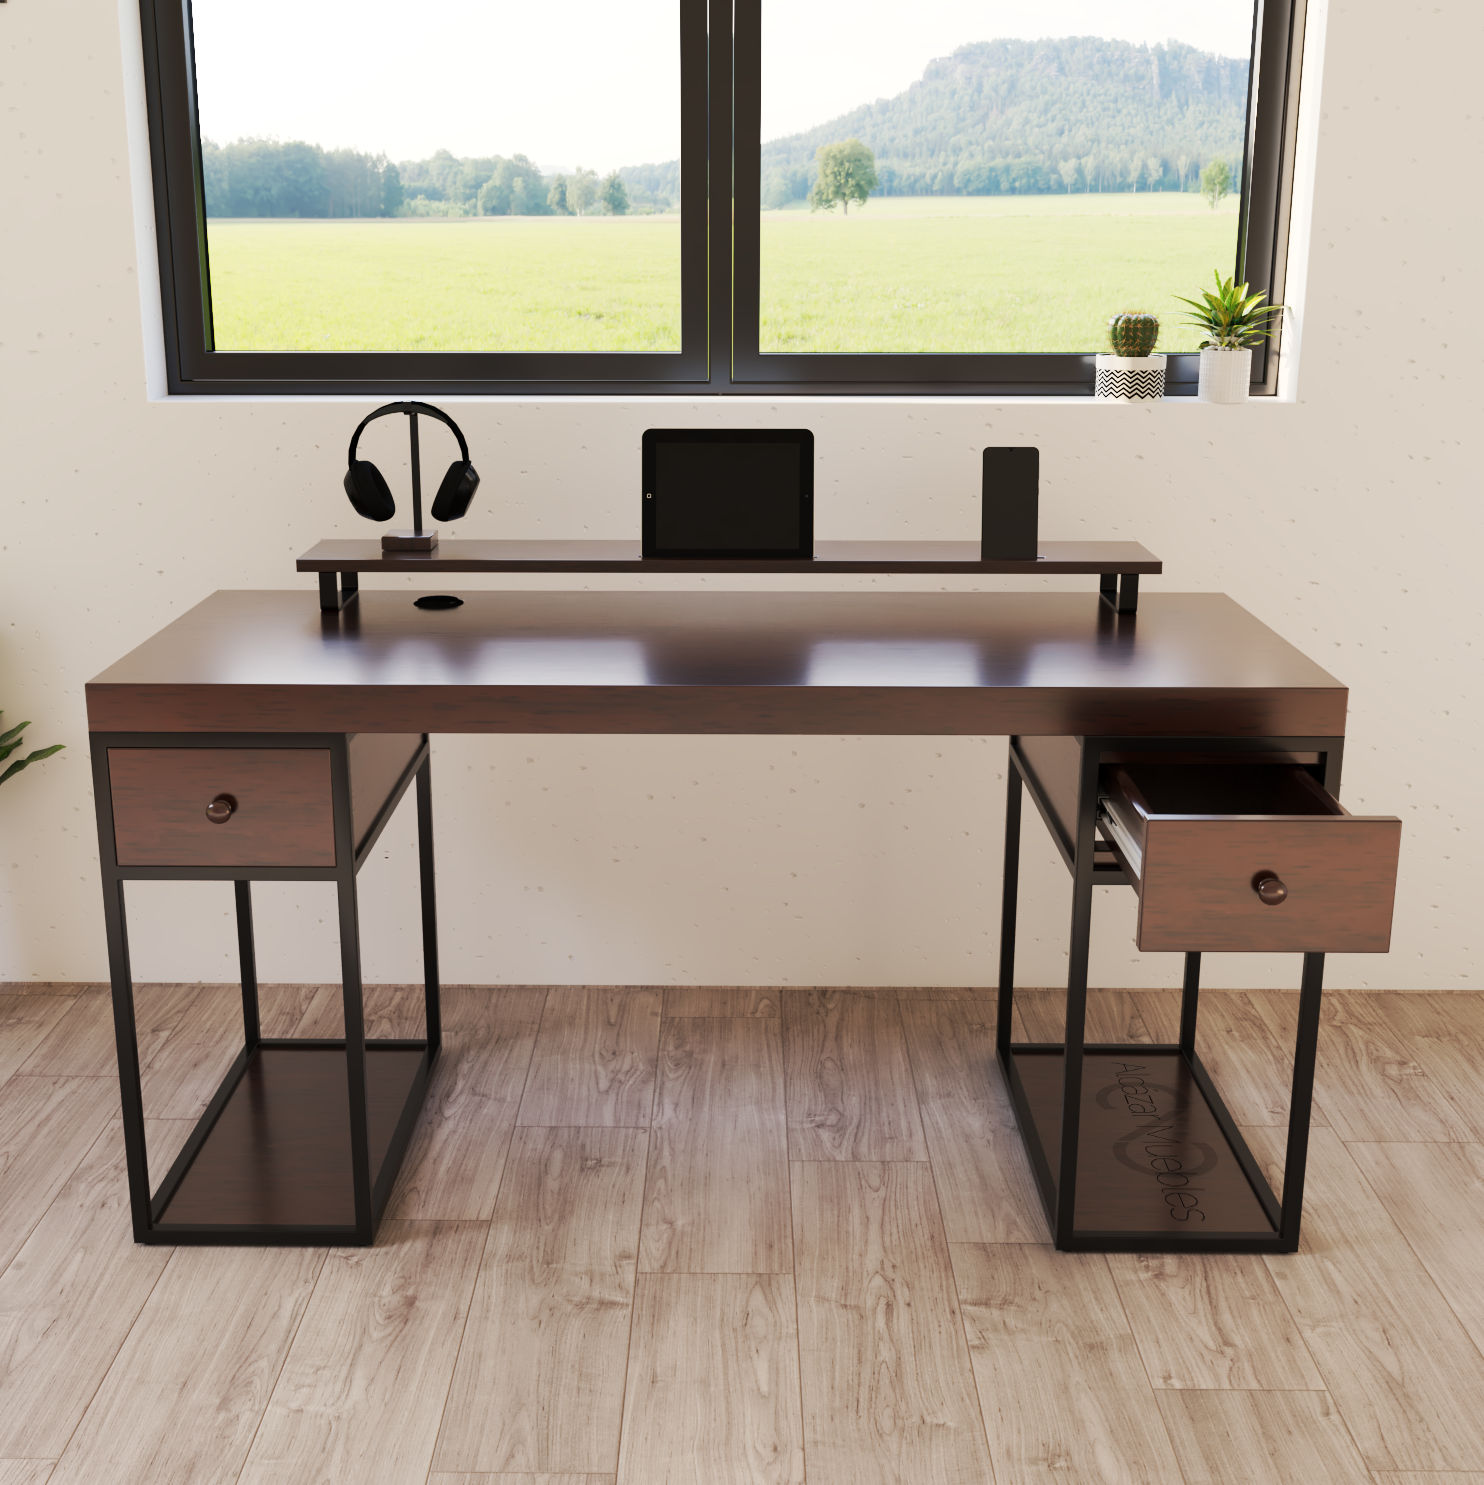 Escritorio Home Office 150 cm 2 cajones estilo Industrial 100% madera